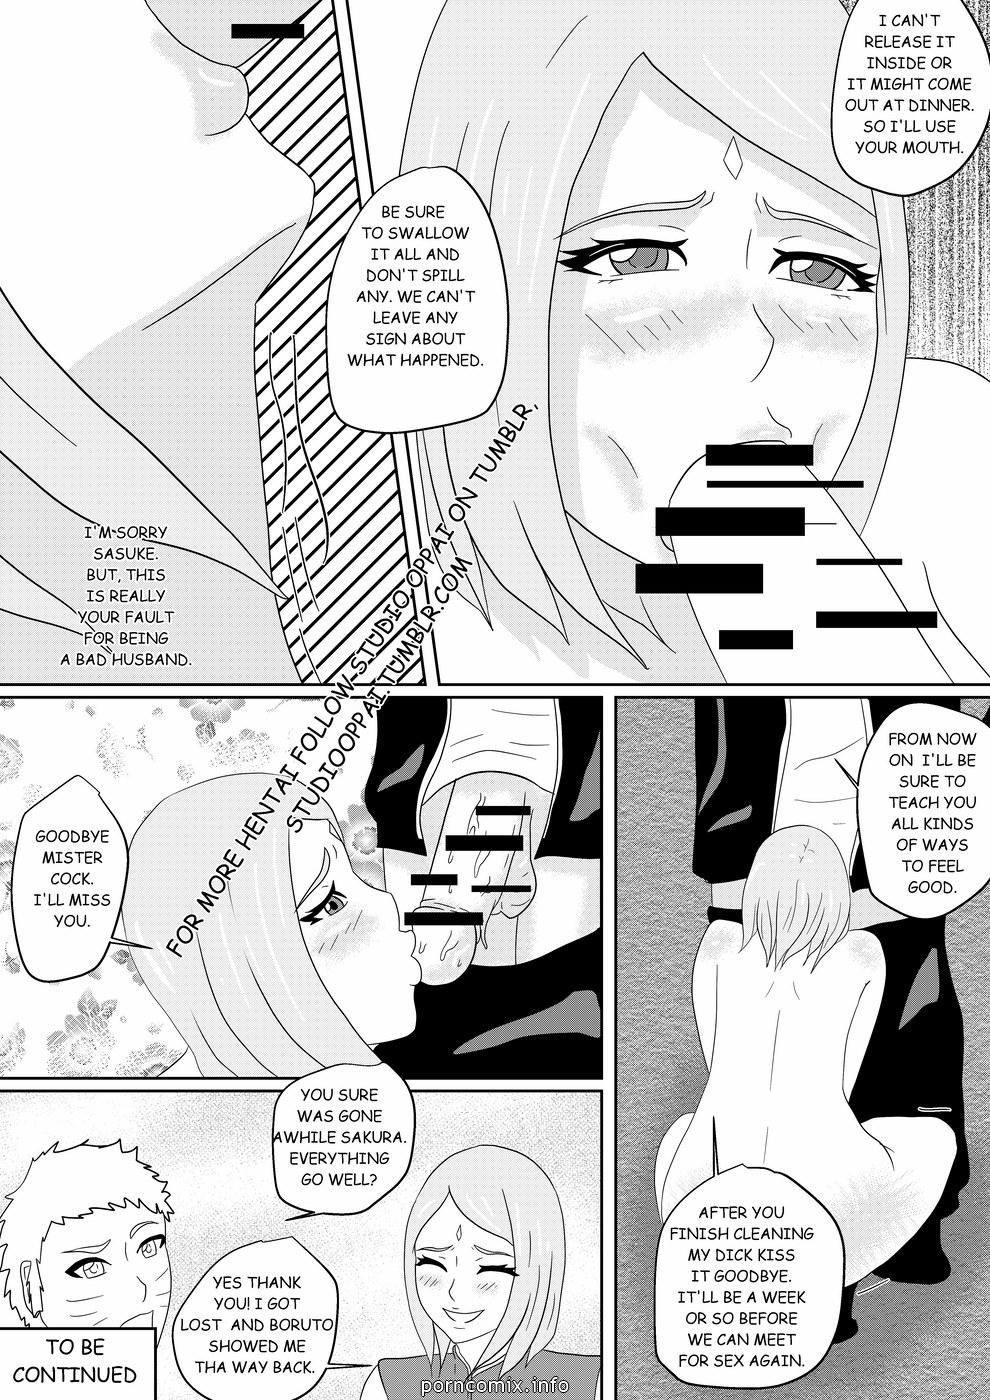 Sakura\'s infidelity (Naruto)